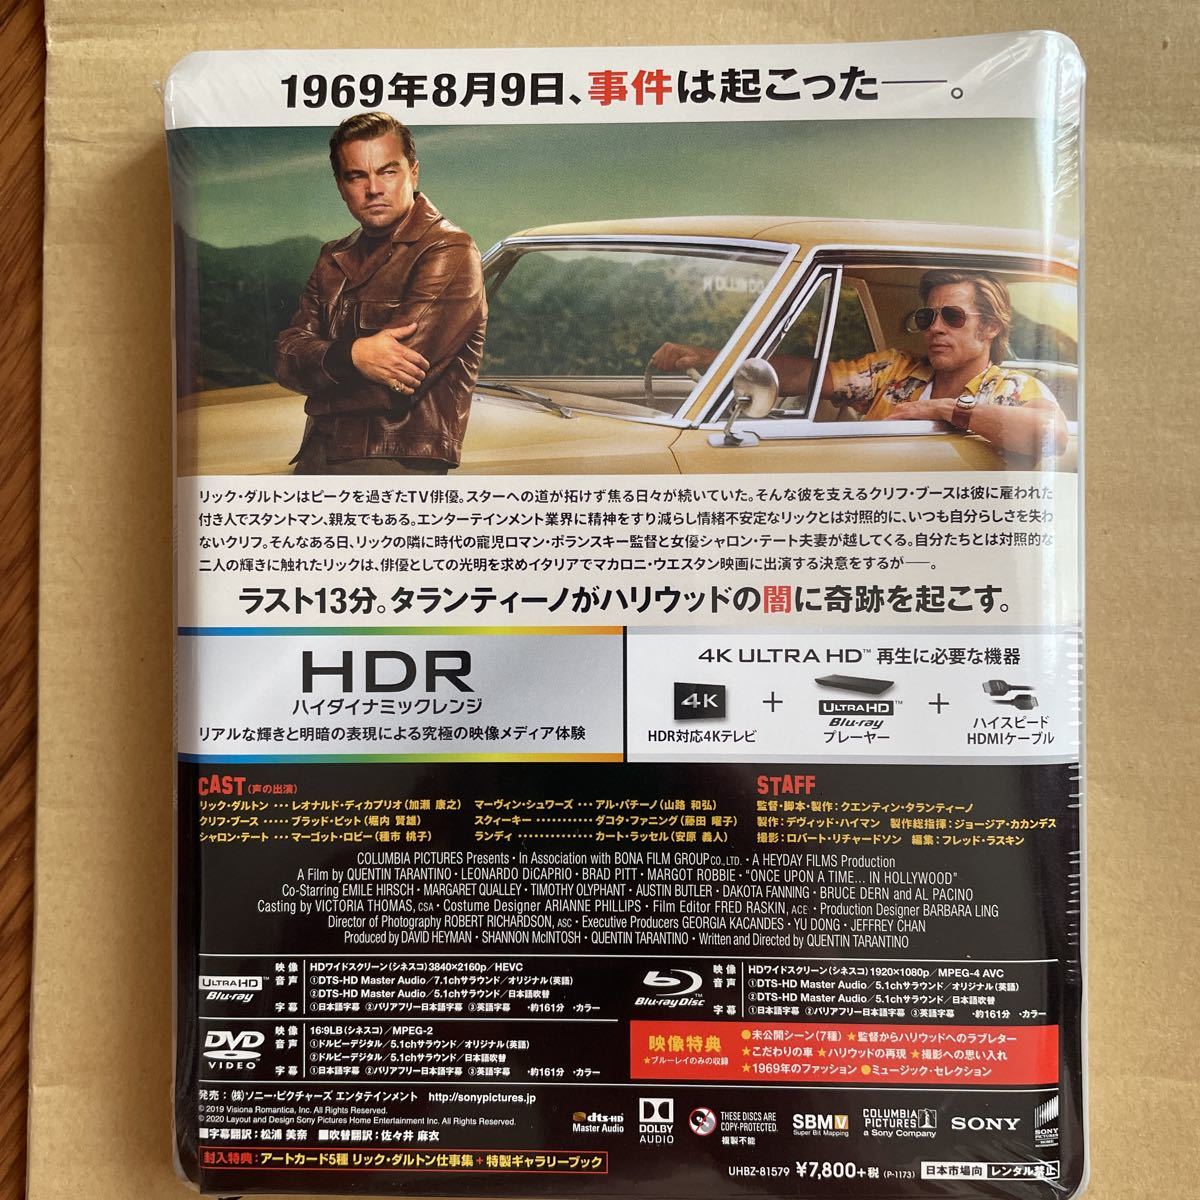 新品 Amazon.co.jp限定 ワンス・アポン・ア・タイム・イン・ハリウッド ブルーレイ&DVD&4K ULTRA HD スチールブック仕様(初回生産限定)